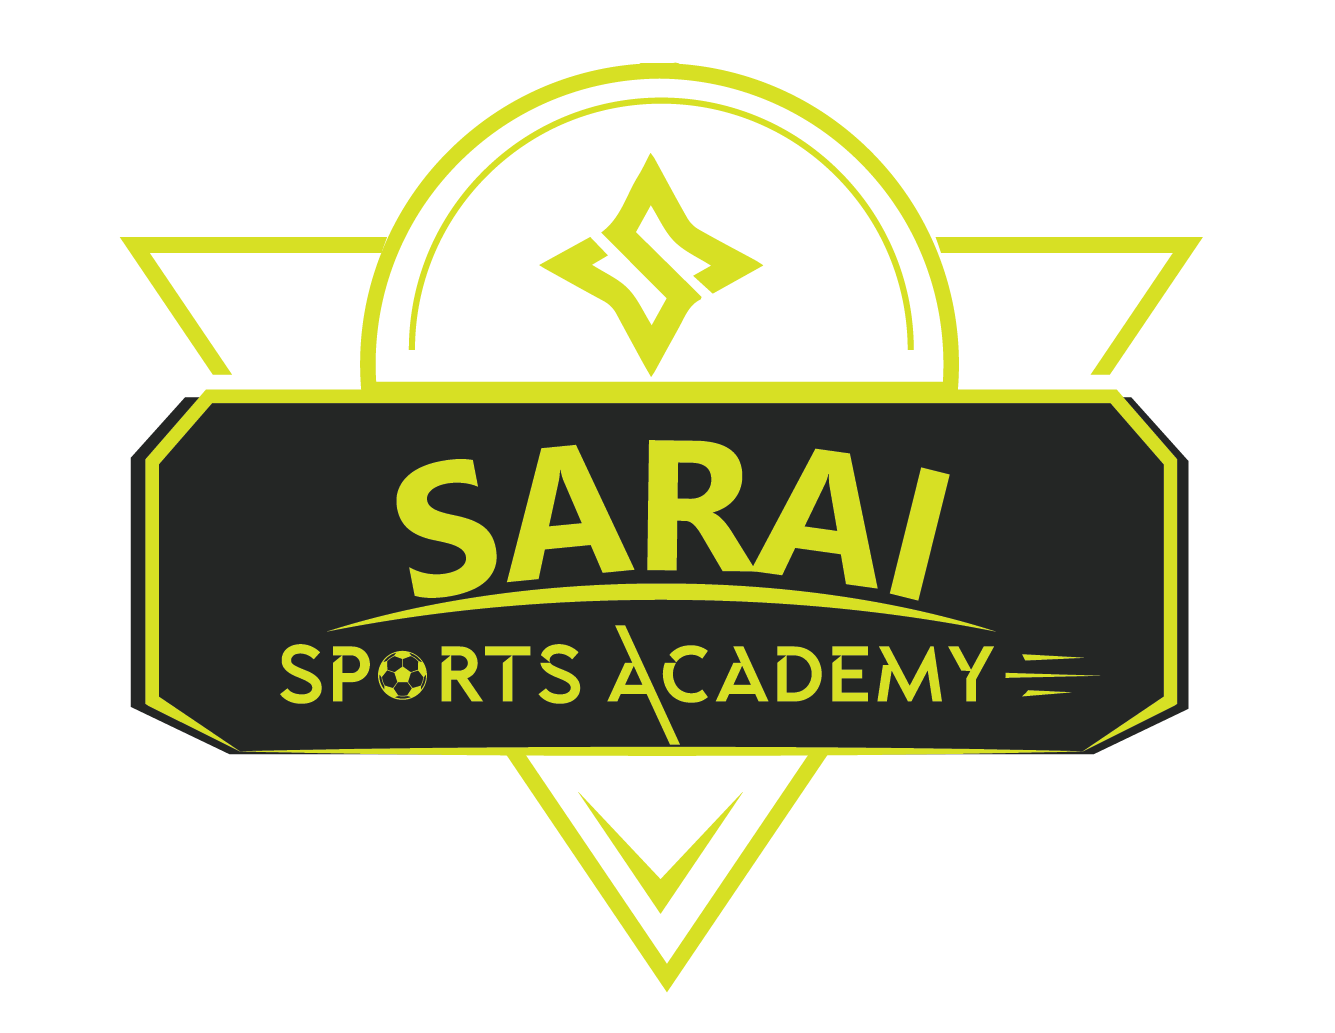 SaraiSports